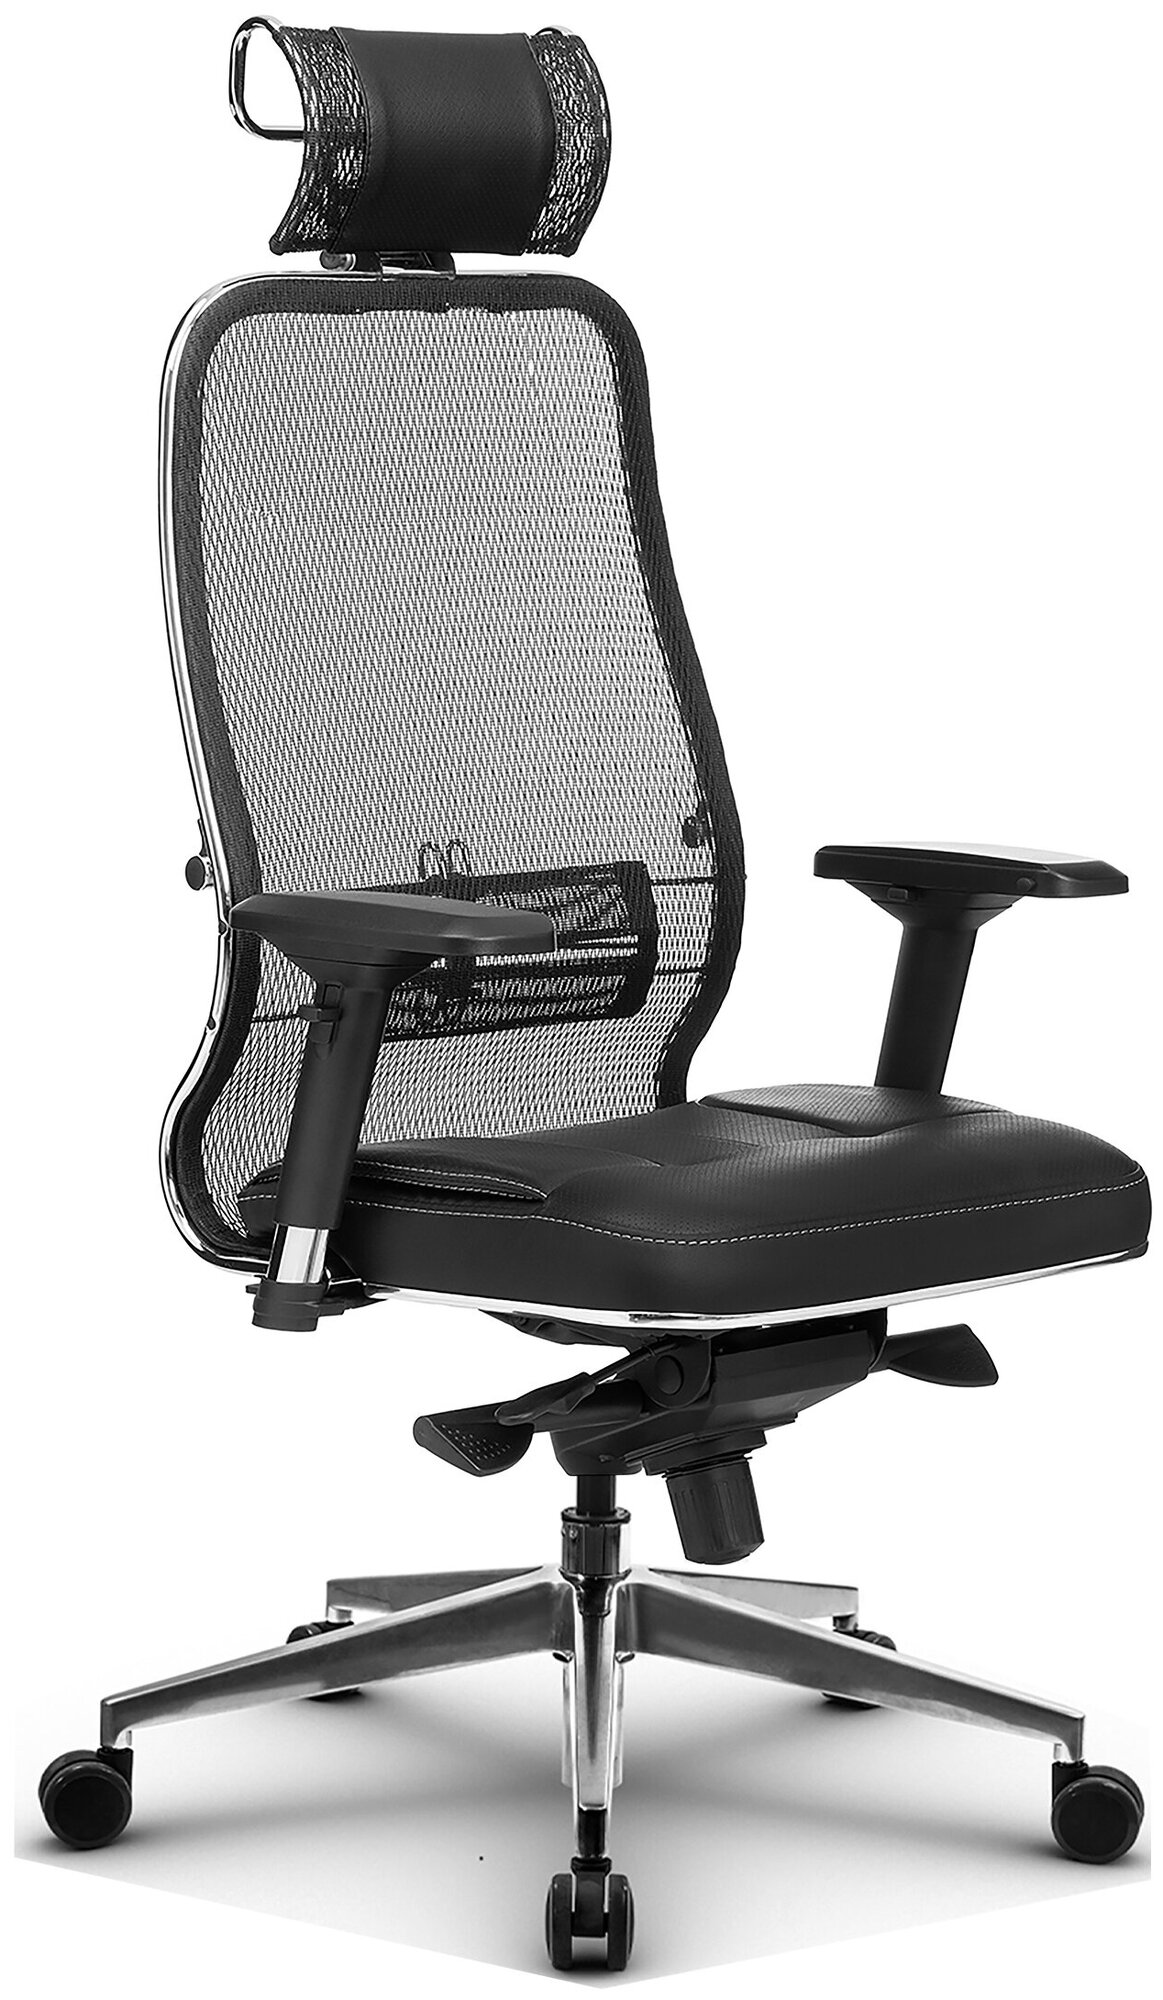 Компьютерное кресло Метта Samurai SL-3.04 для руководителя, обивка: текстиль/искусственная кожа, цвет: черный